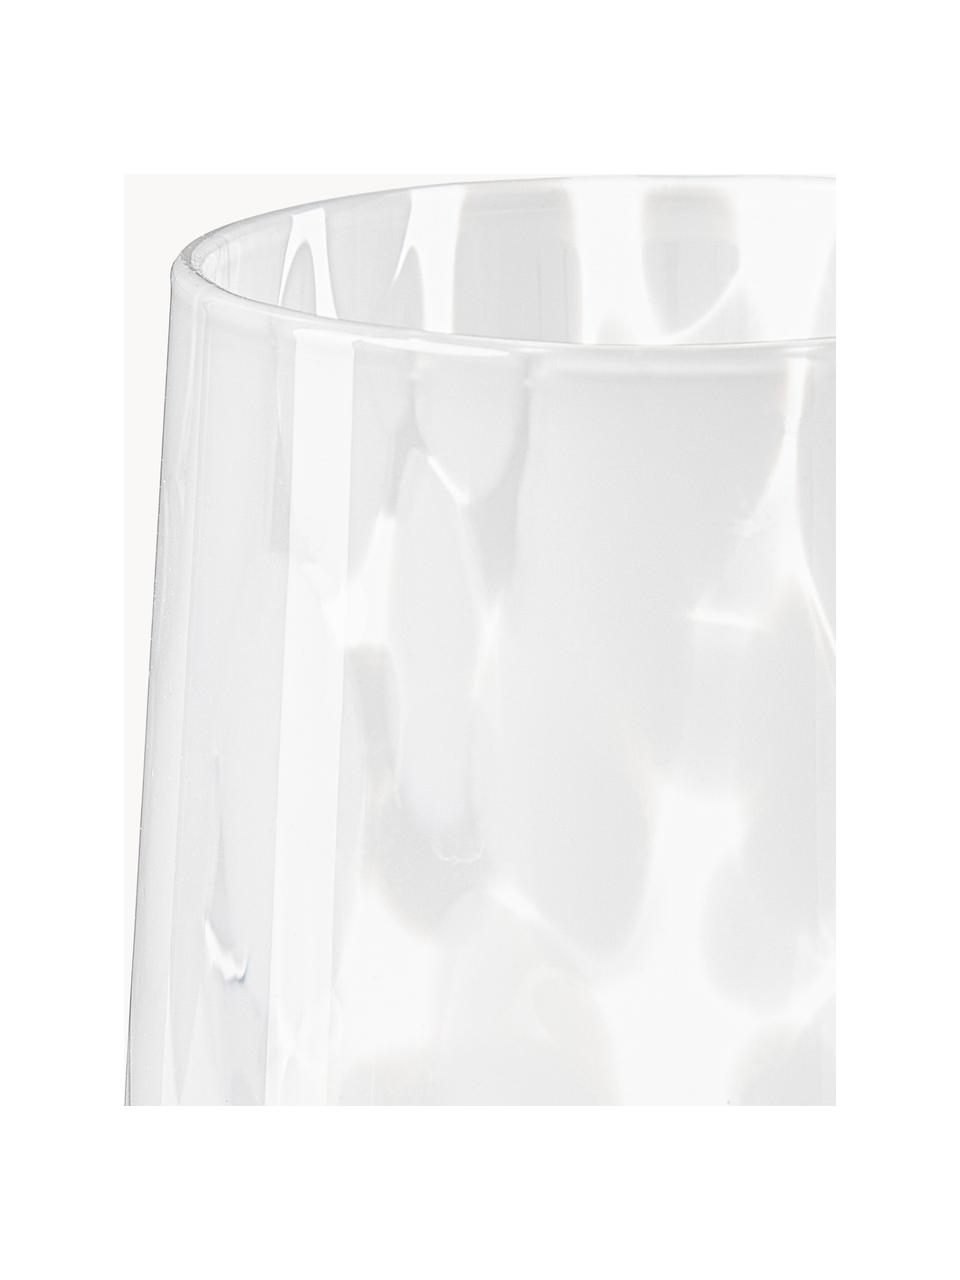 Handgemachte Wassergläser Oakley mit Tupfen-Muster, 4 Stück, Weiss, Transparent, Ø 9 x H 10 cm, 370 ml